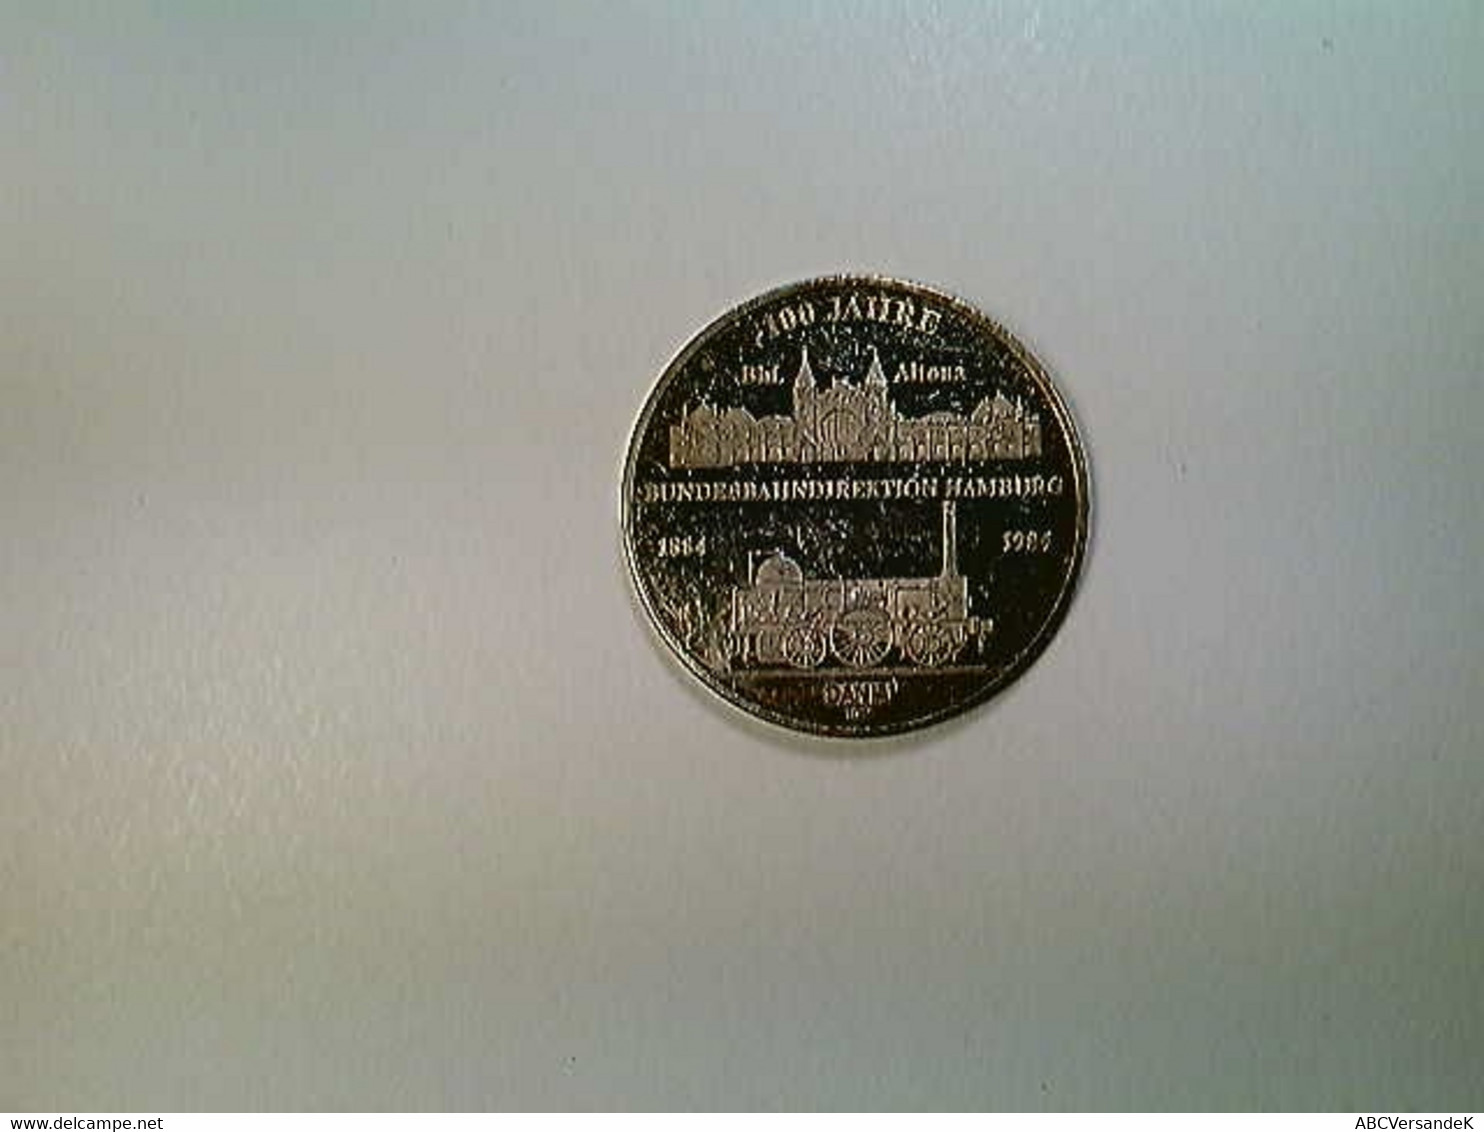 Medaille Hamburg 100 Jahre Bundesbahndirektion 1884-1984, Silber 1000 - Numismatik